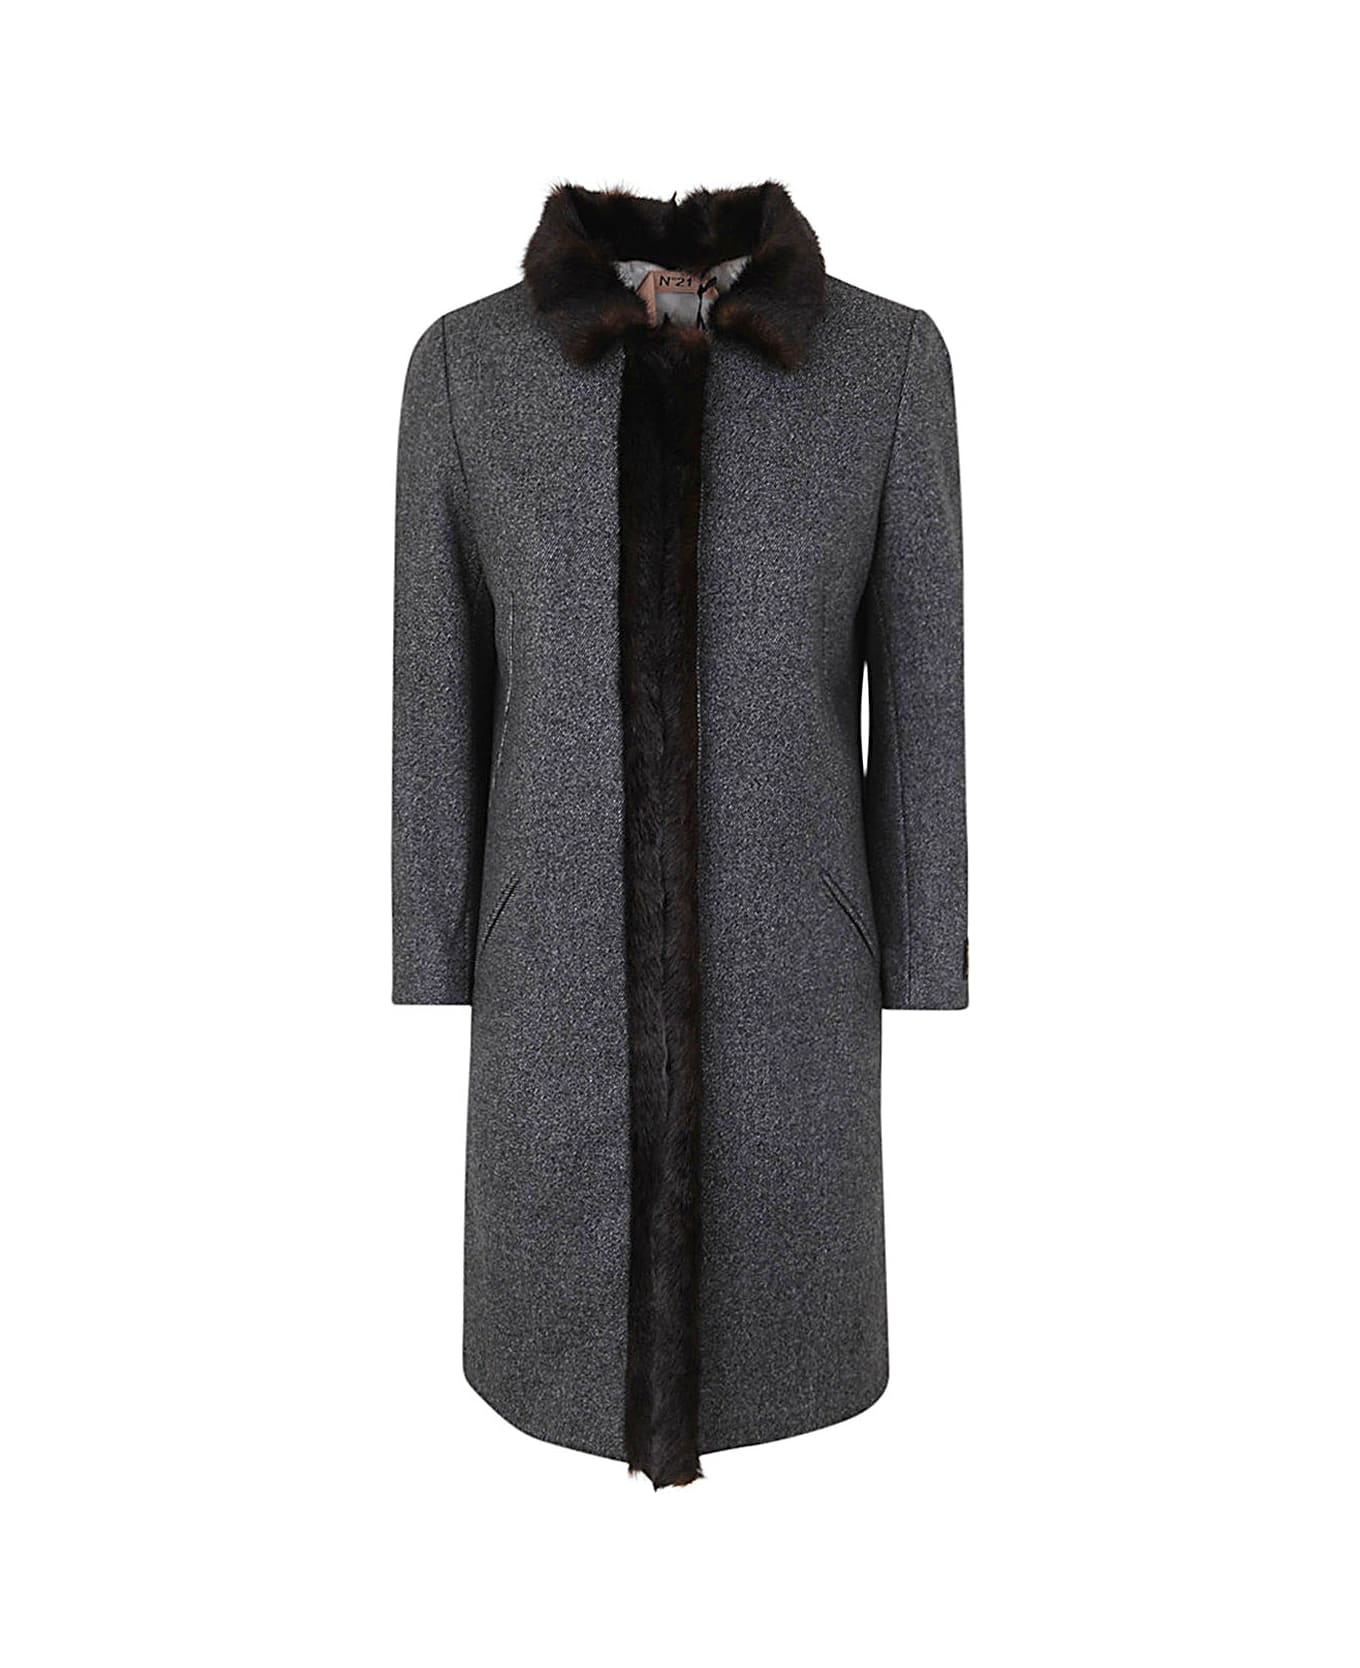 N.21 Short Coat - Grey Black Melange